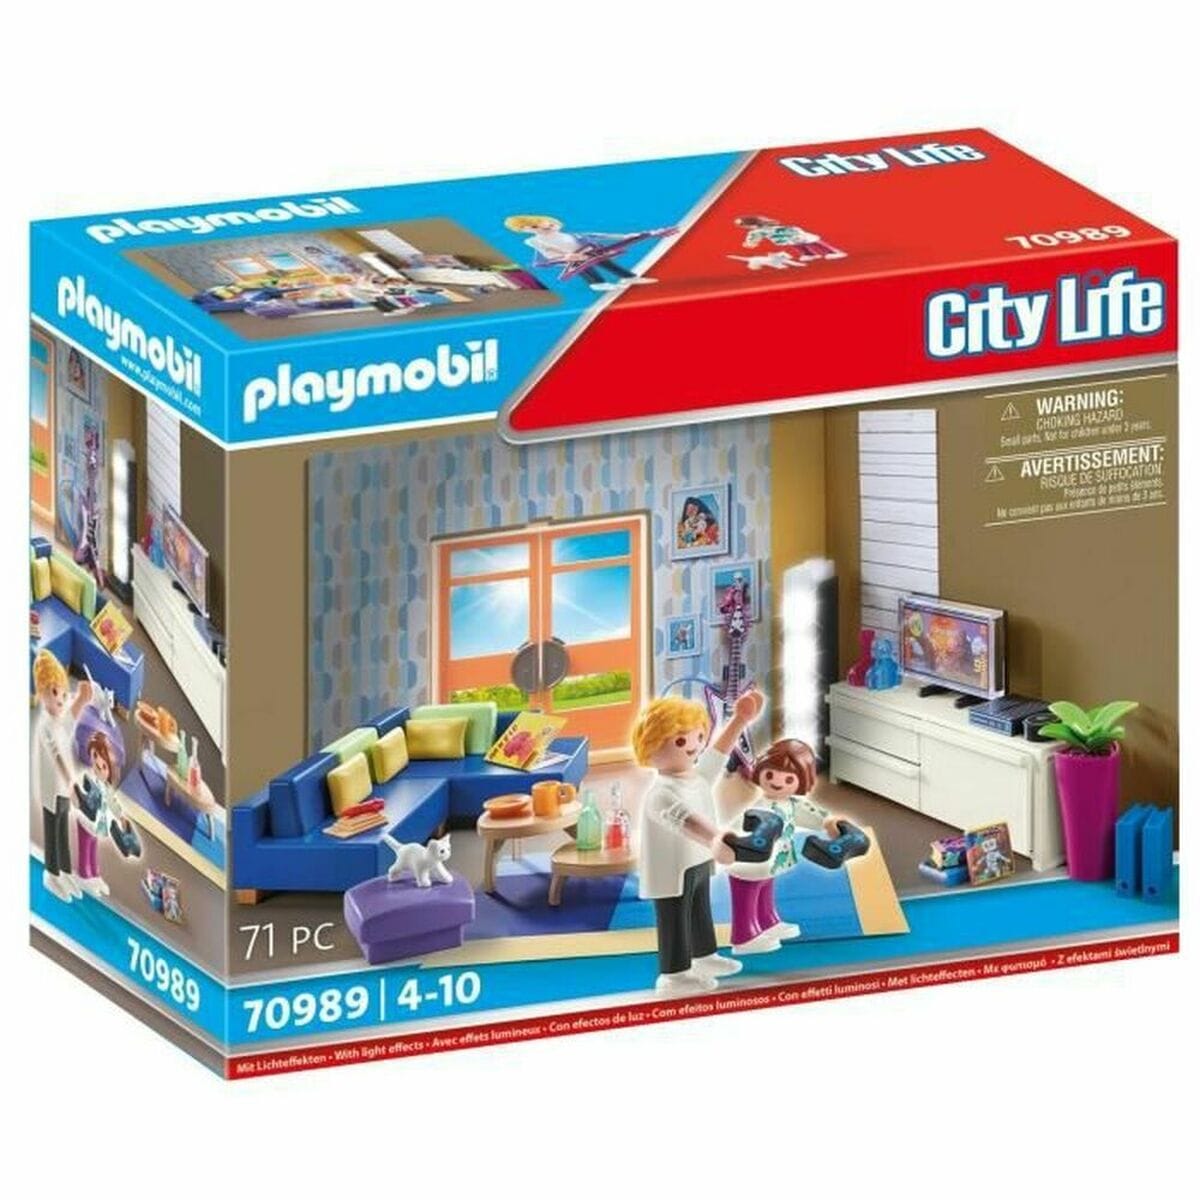 Playmobil Spielzeug | Kostüme > Spielzeug und Spiele > Weiteres spielzeug Playset Playmobil 70989 Esszimmer-Set